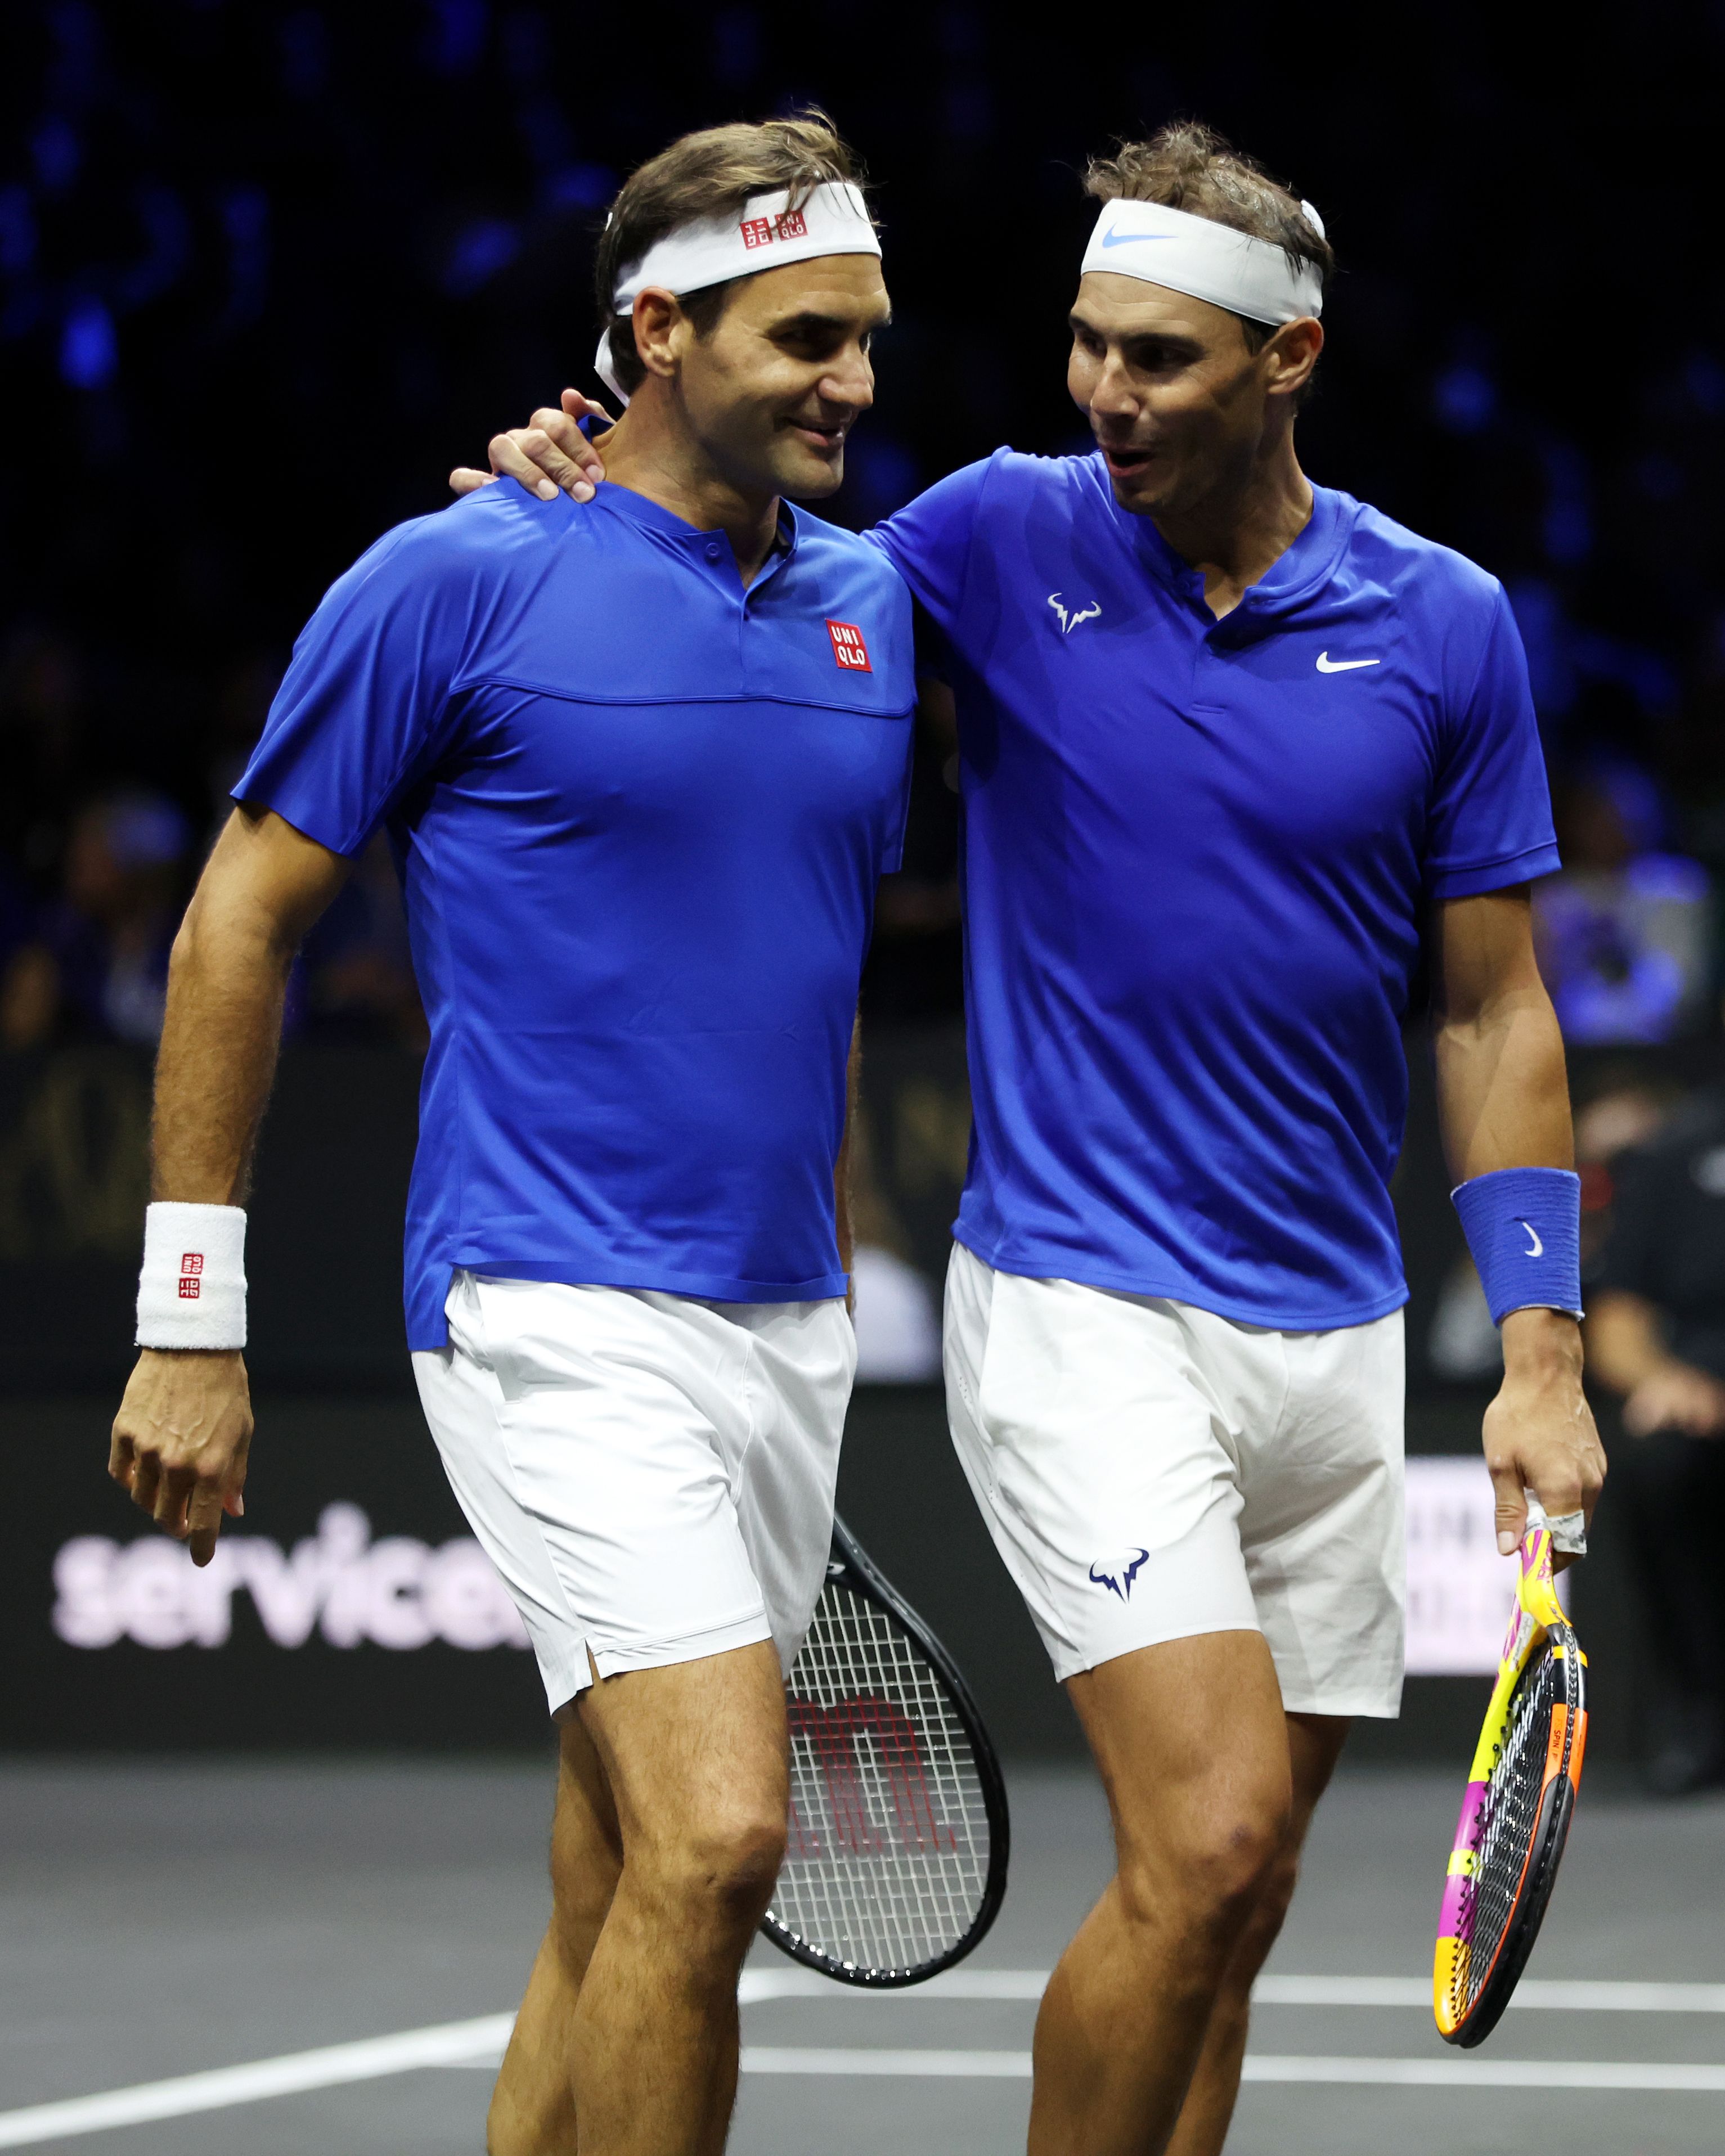 Roger Federer and Rafa Nadal on court